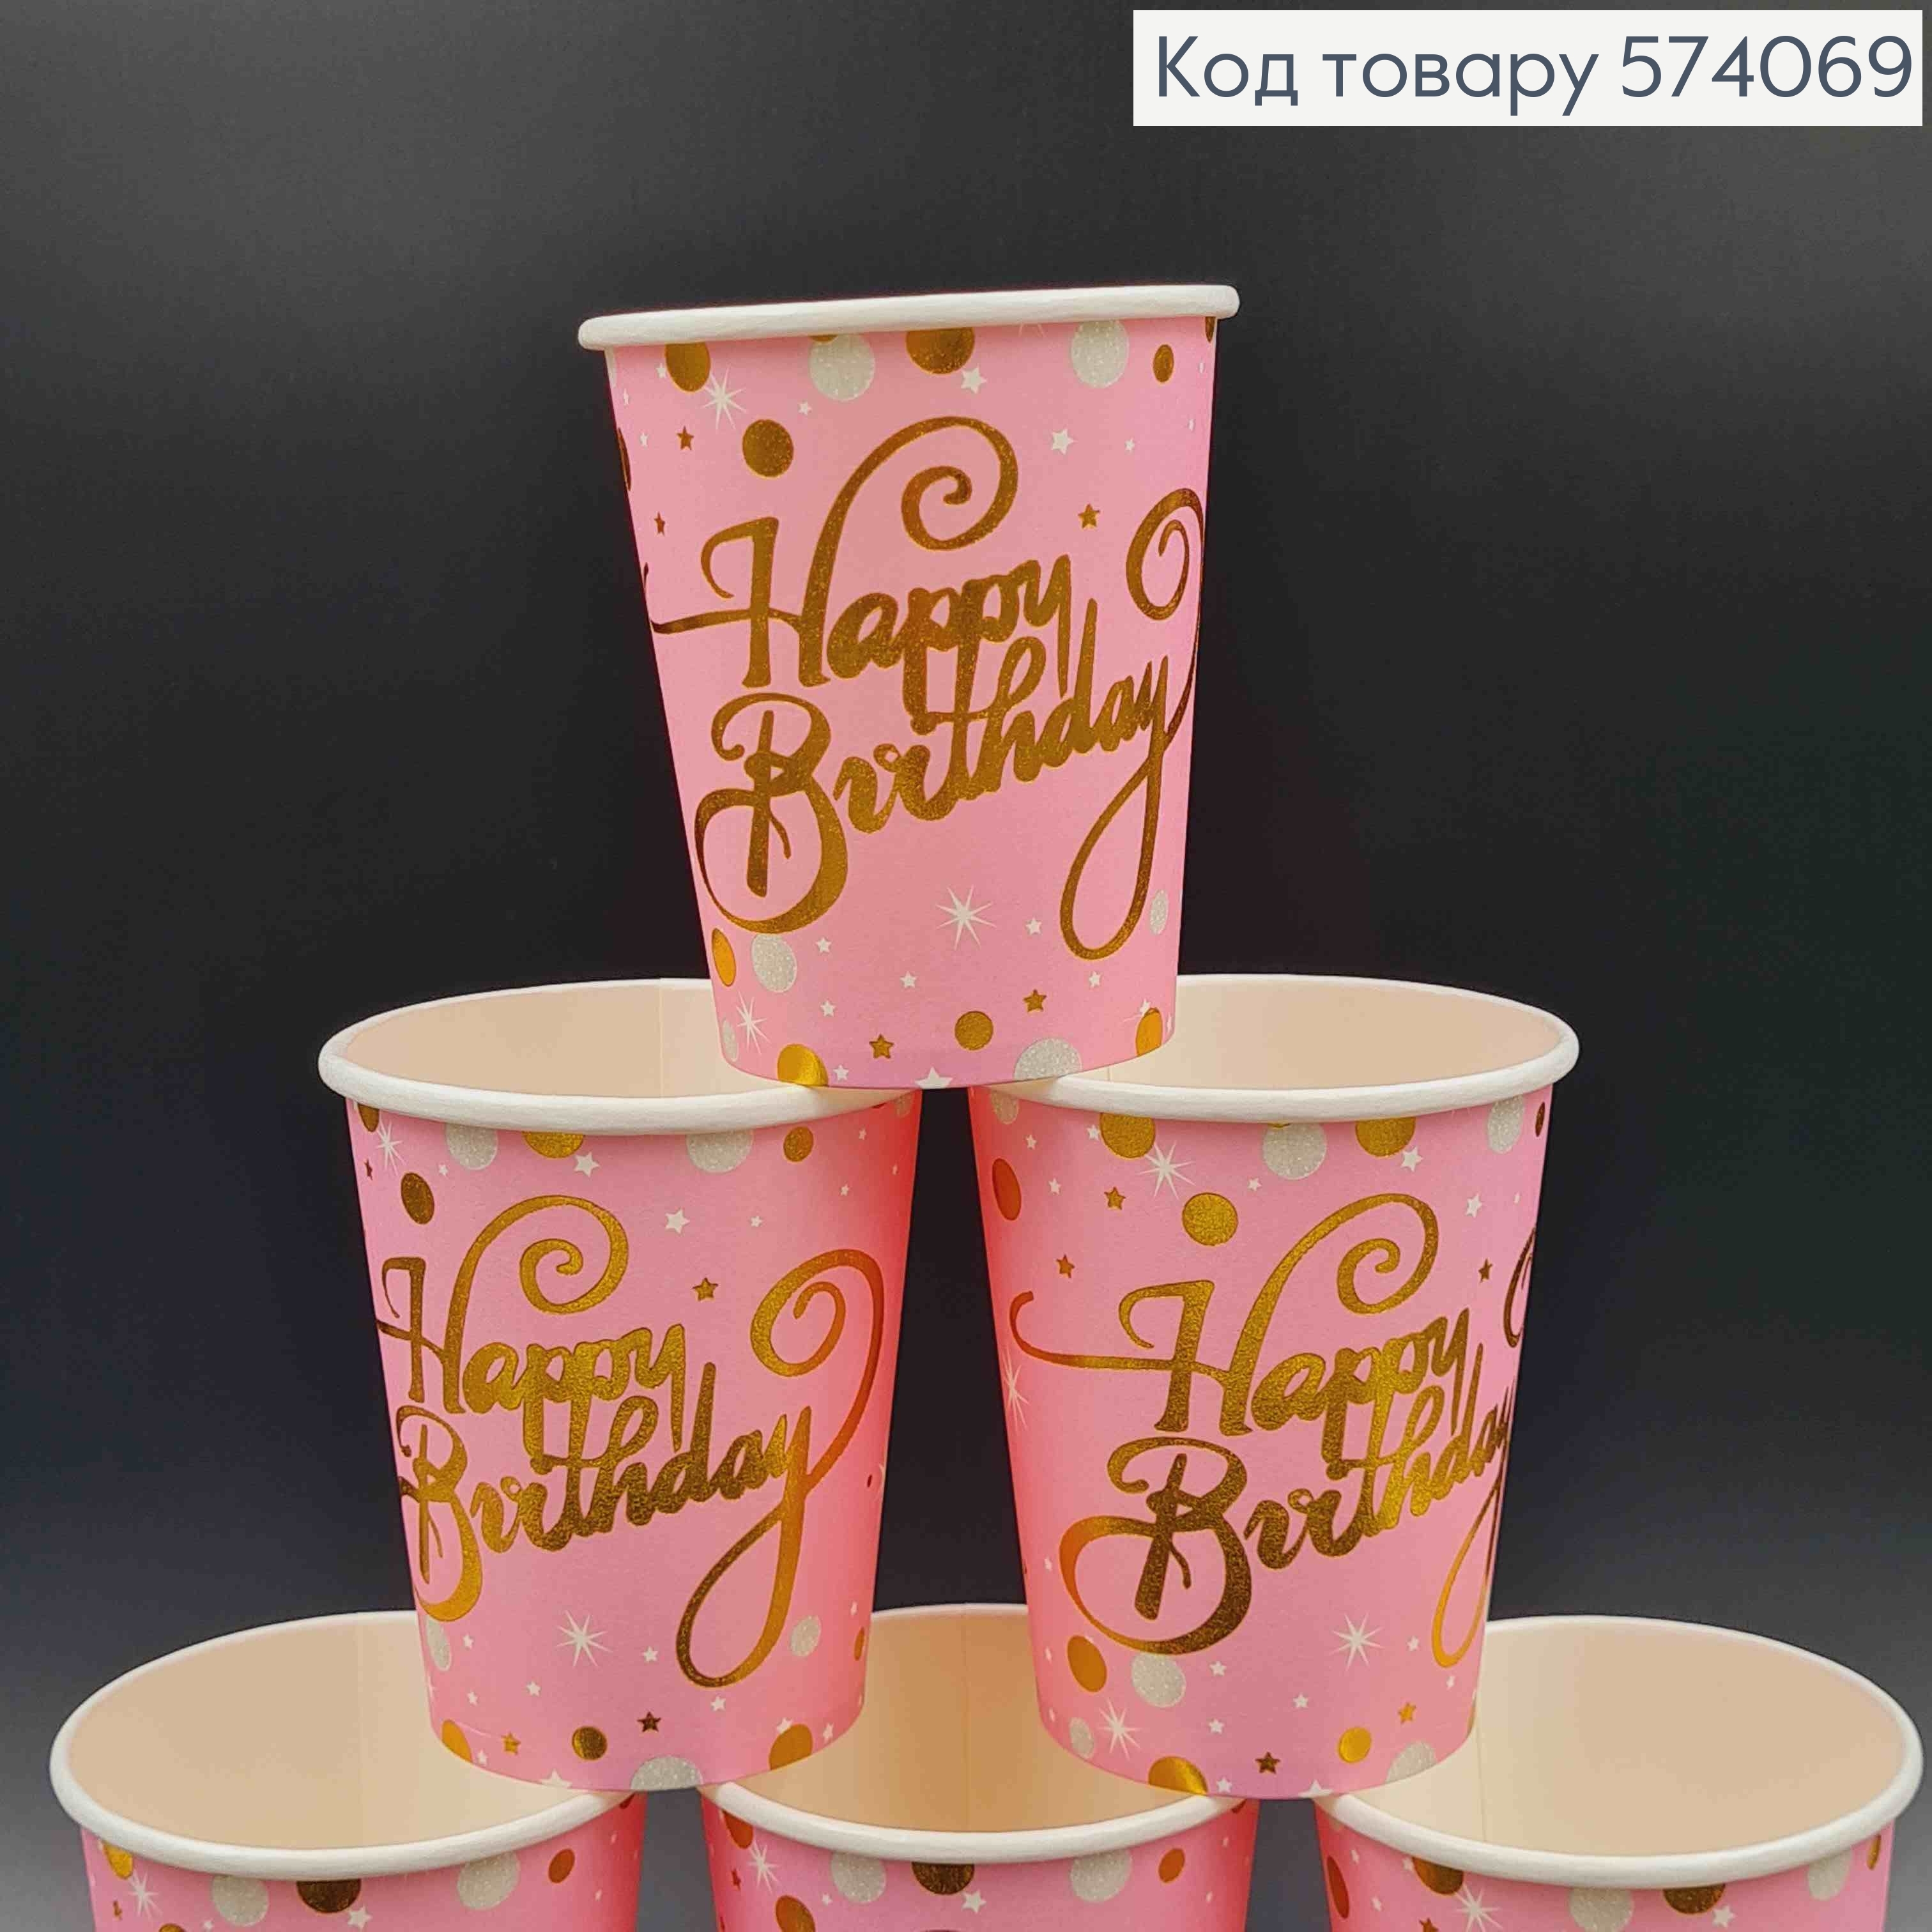 Набор бумажных стаканчиков, "Happy Birthday" розового цвета в золотой горошек, 10шт/уп. 574069 фото 2